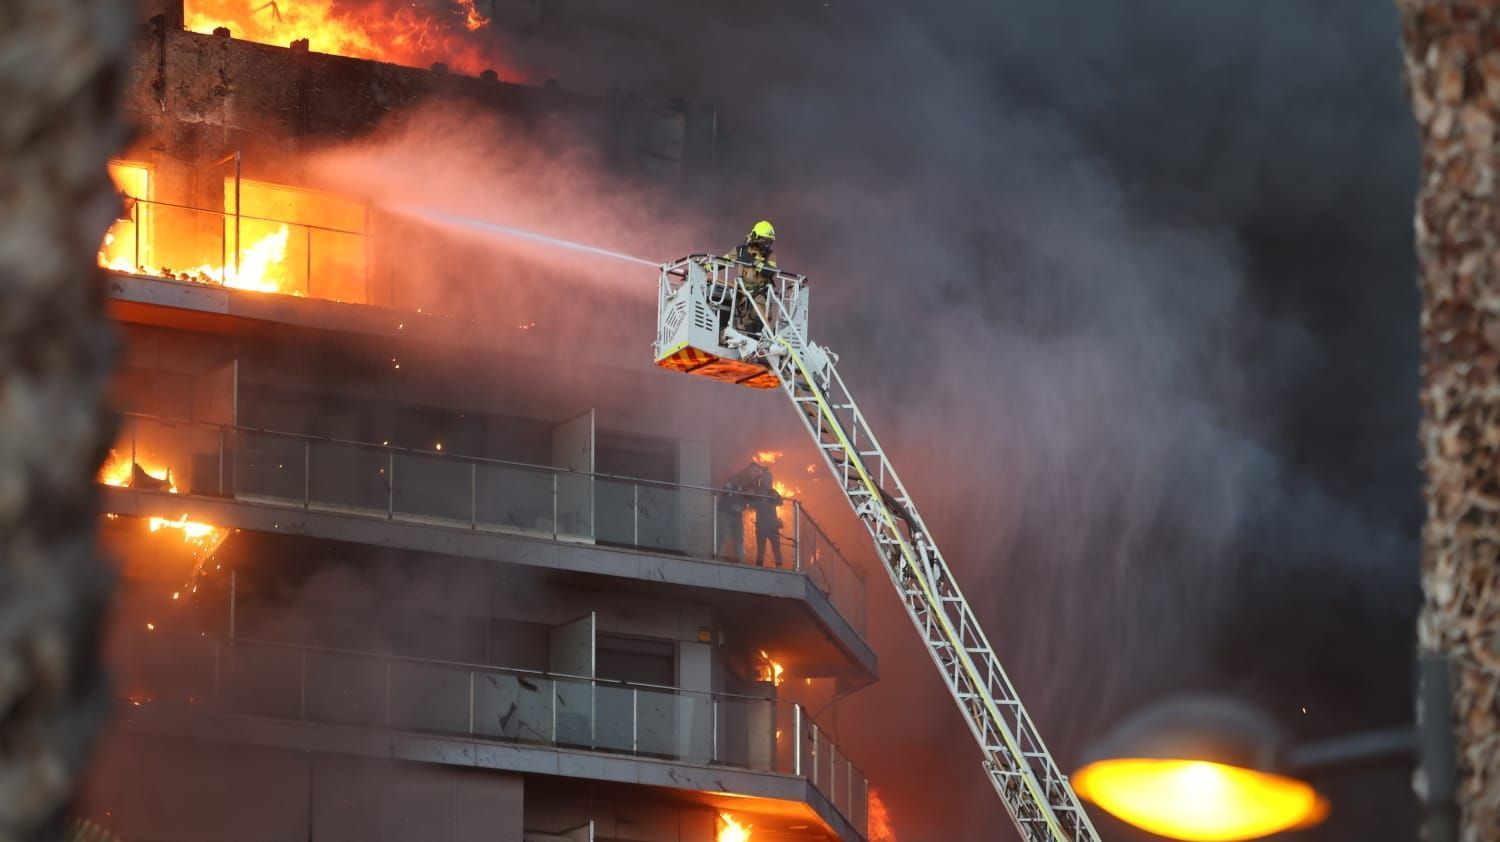 Bilder des Großbrandes in einem Wohnblock in Valencia